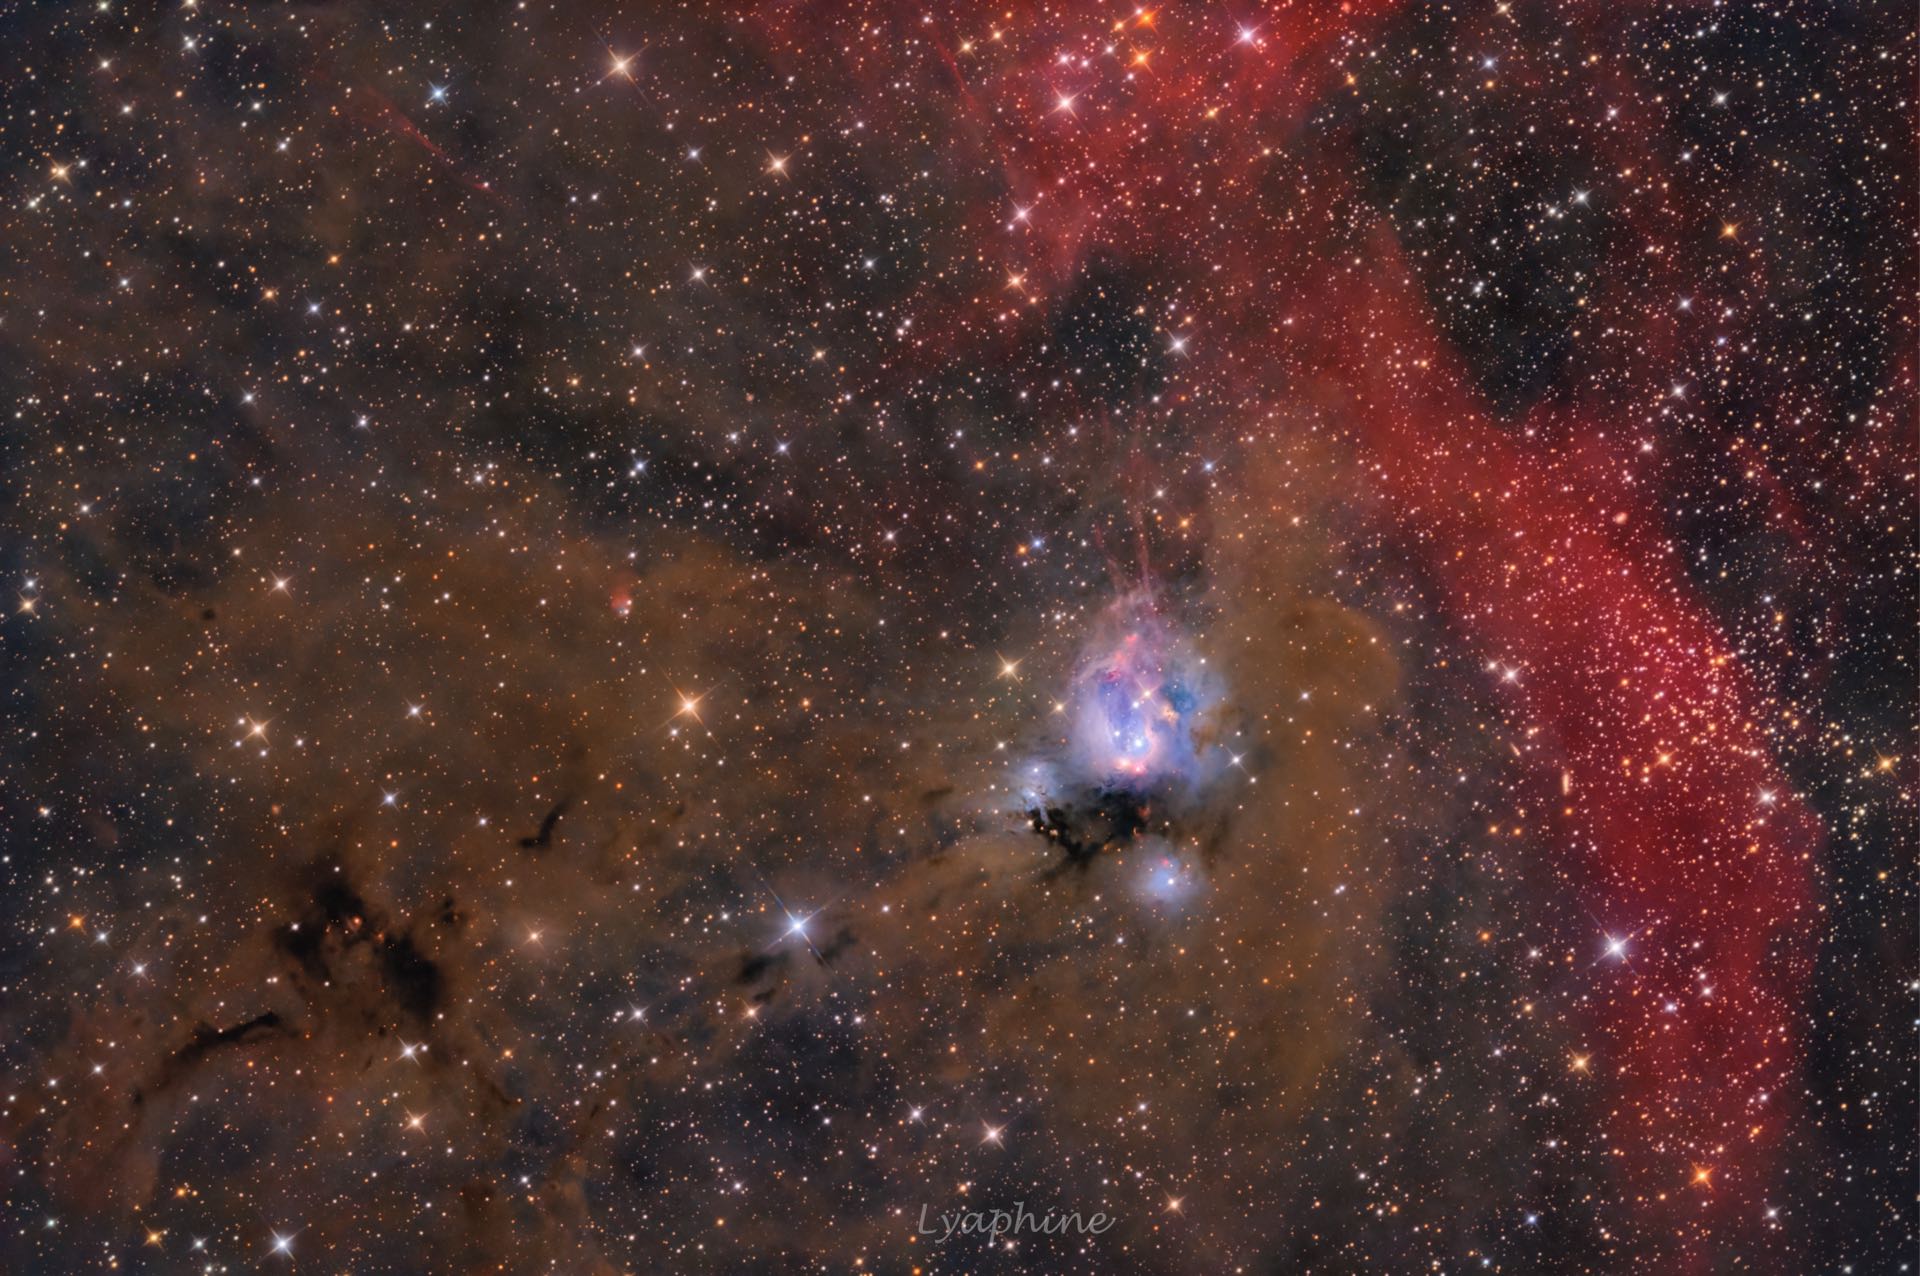 NGC 7129 und Rebpau1, fotografiert von Sophie Paulin. Rebpau1 ist der planetarisch anmutende Nebel im linken Bilddrittel, etwa auf Höhe von NGC 7129.